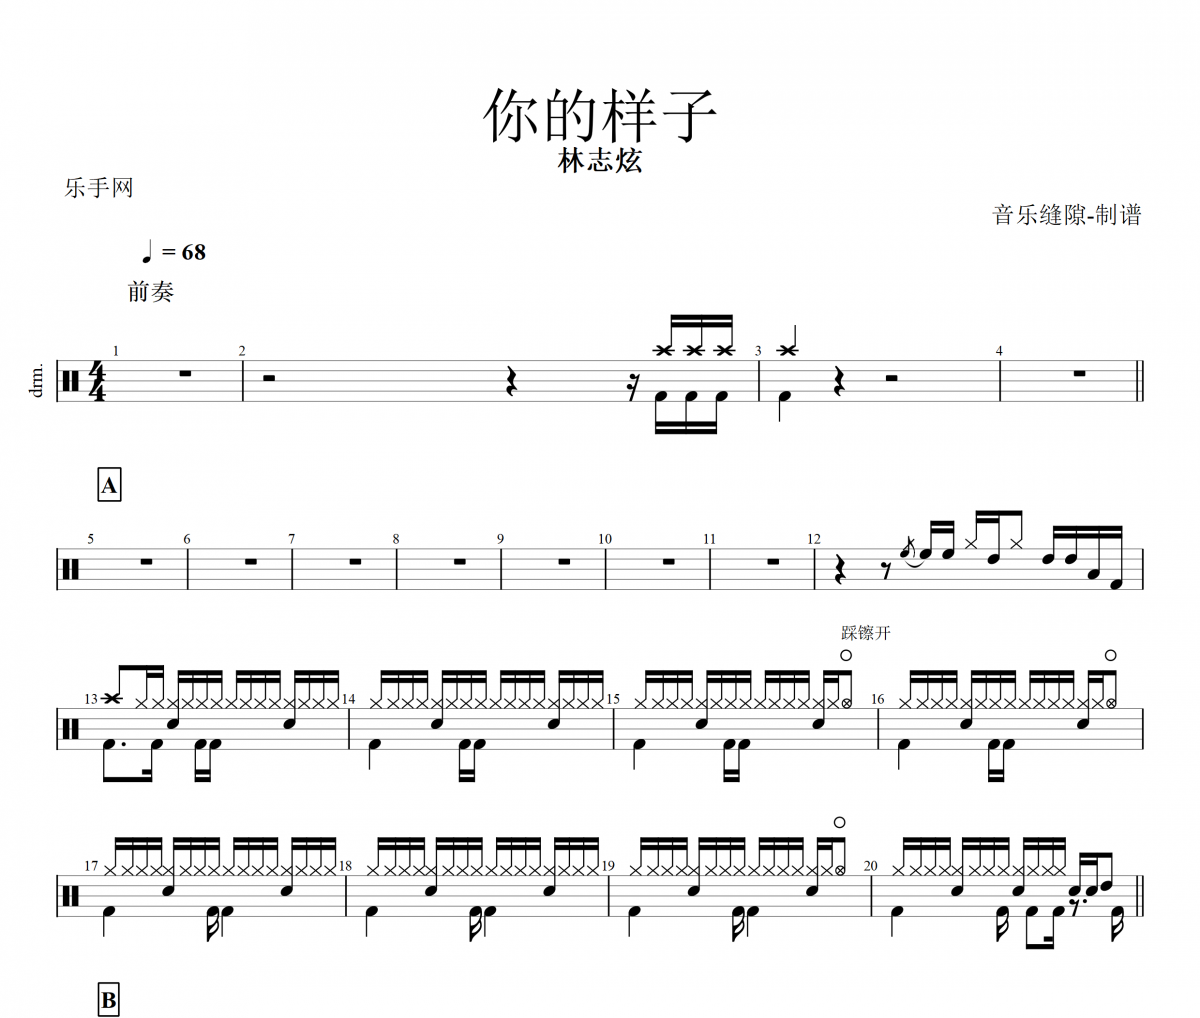 林志炫-你的样子架子鼓谱爵士鼓曲谱